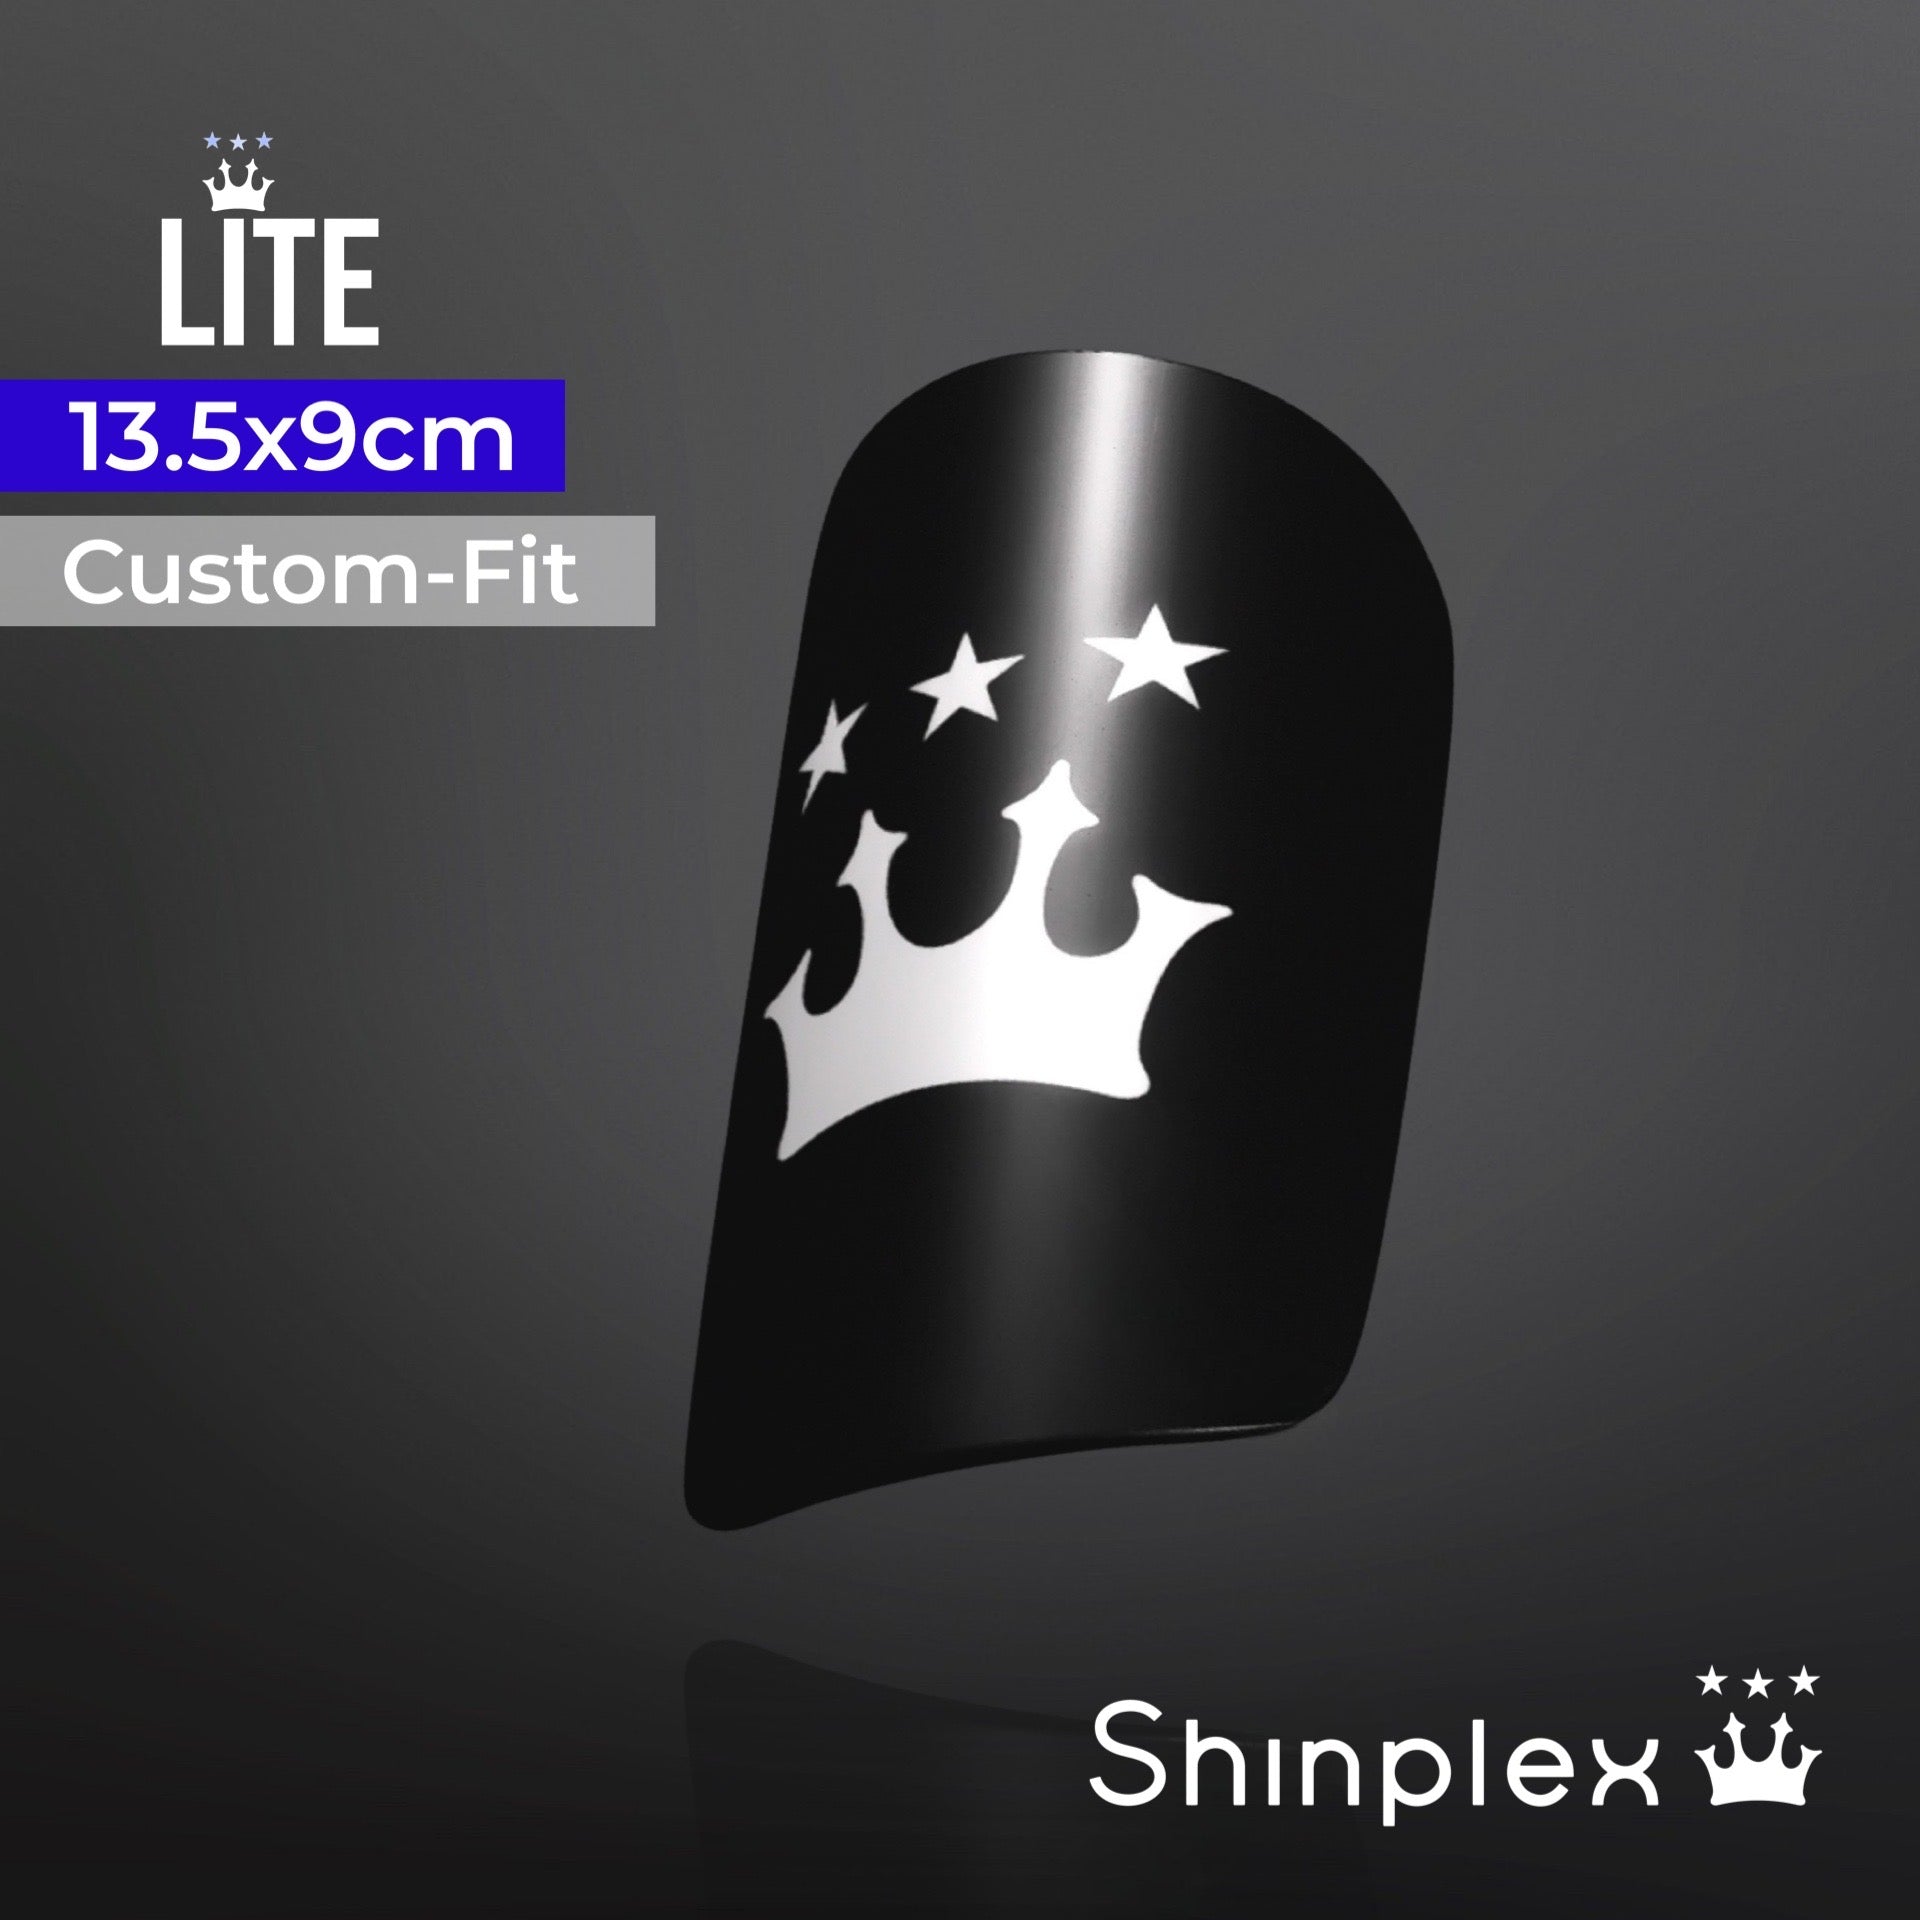 Shinplex™ Mouldable Shin Pads